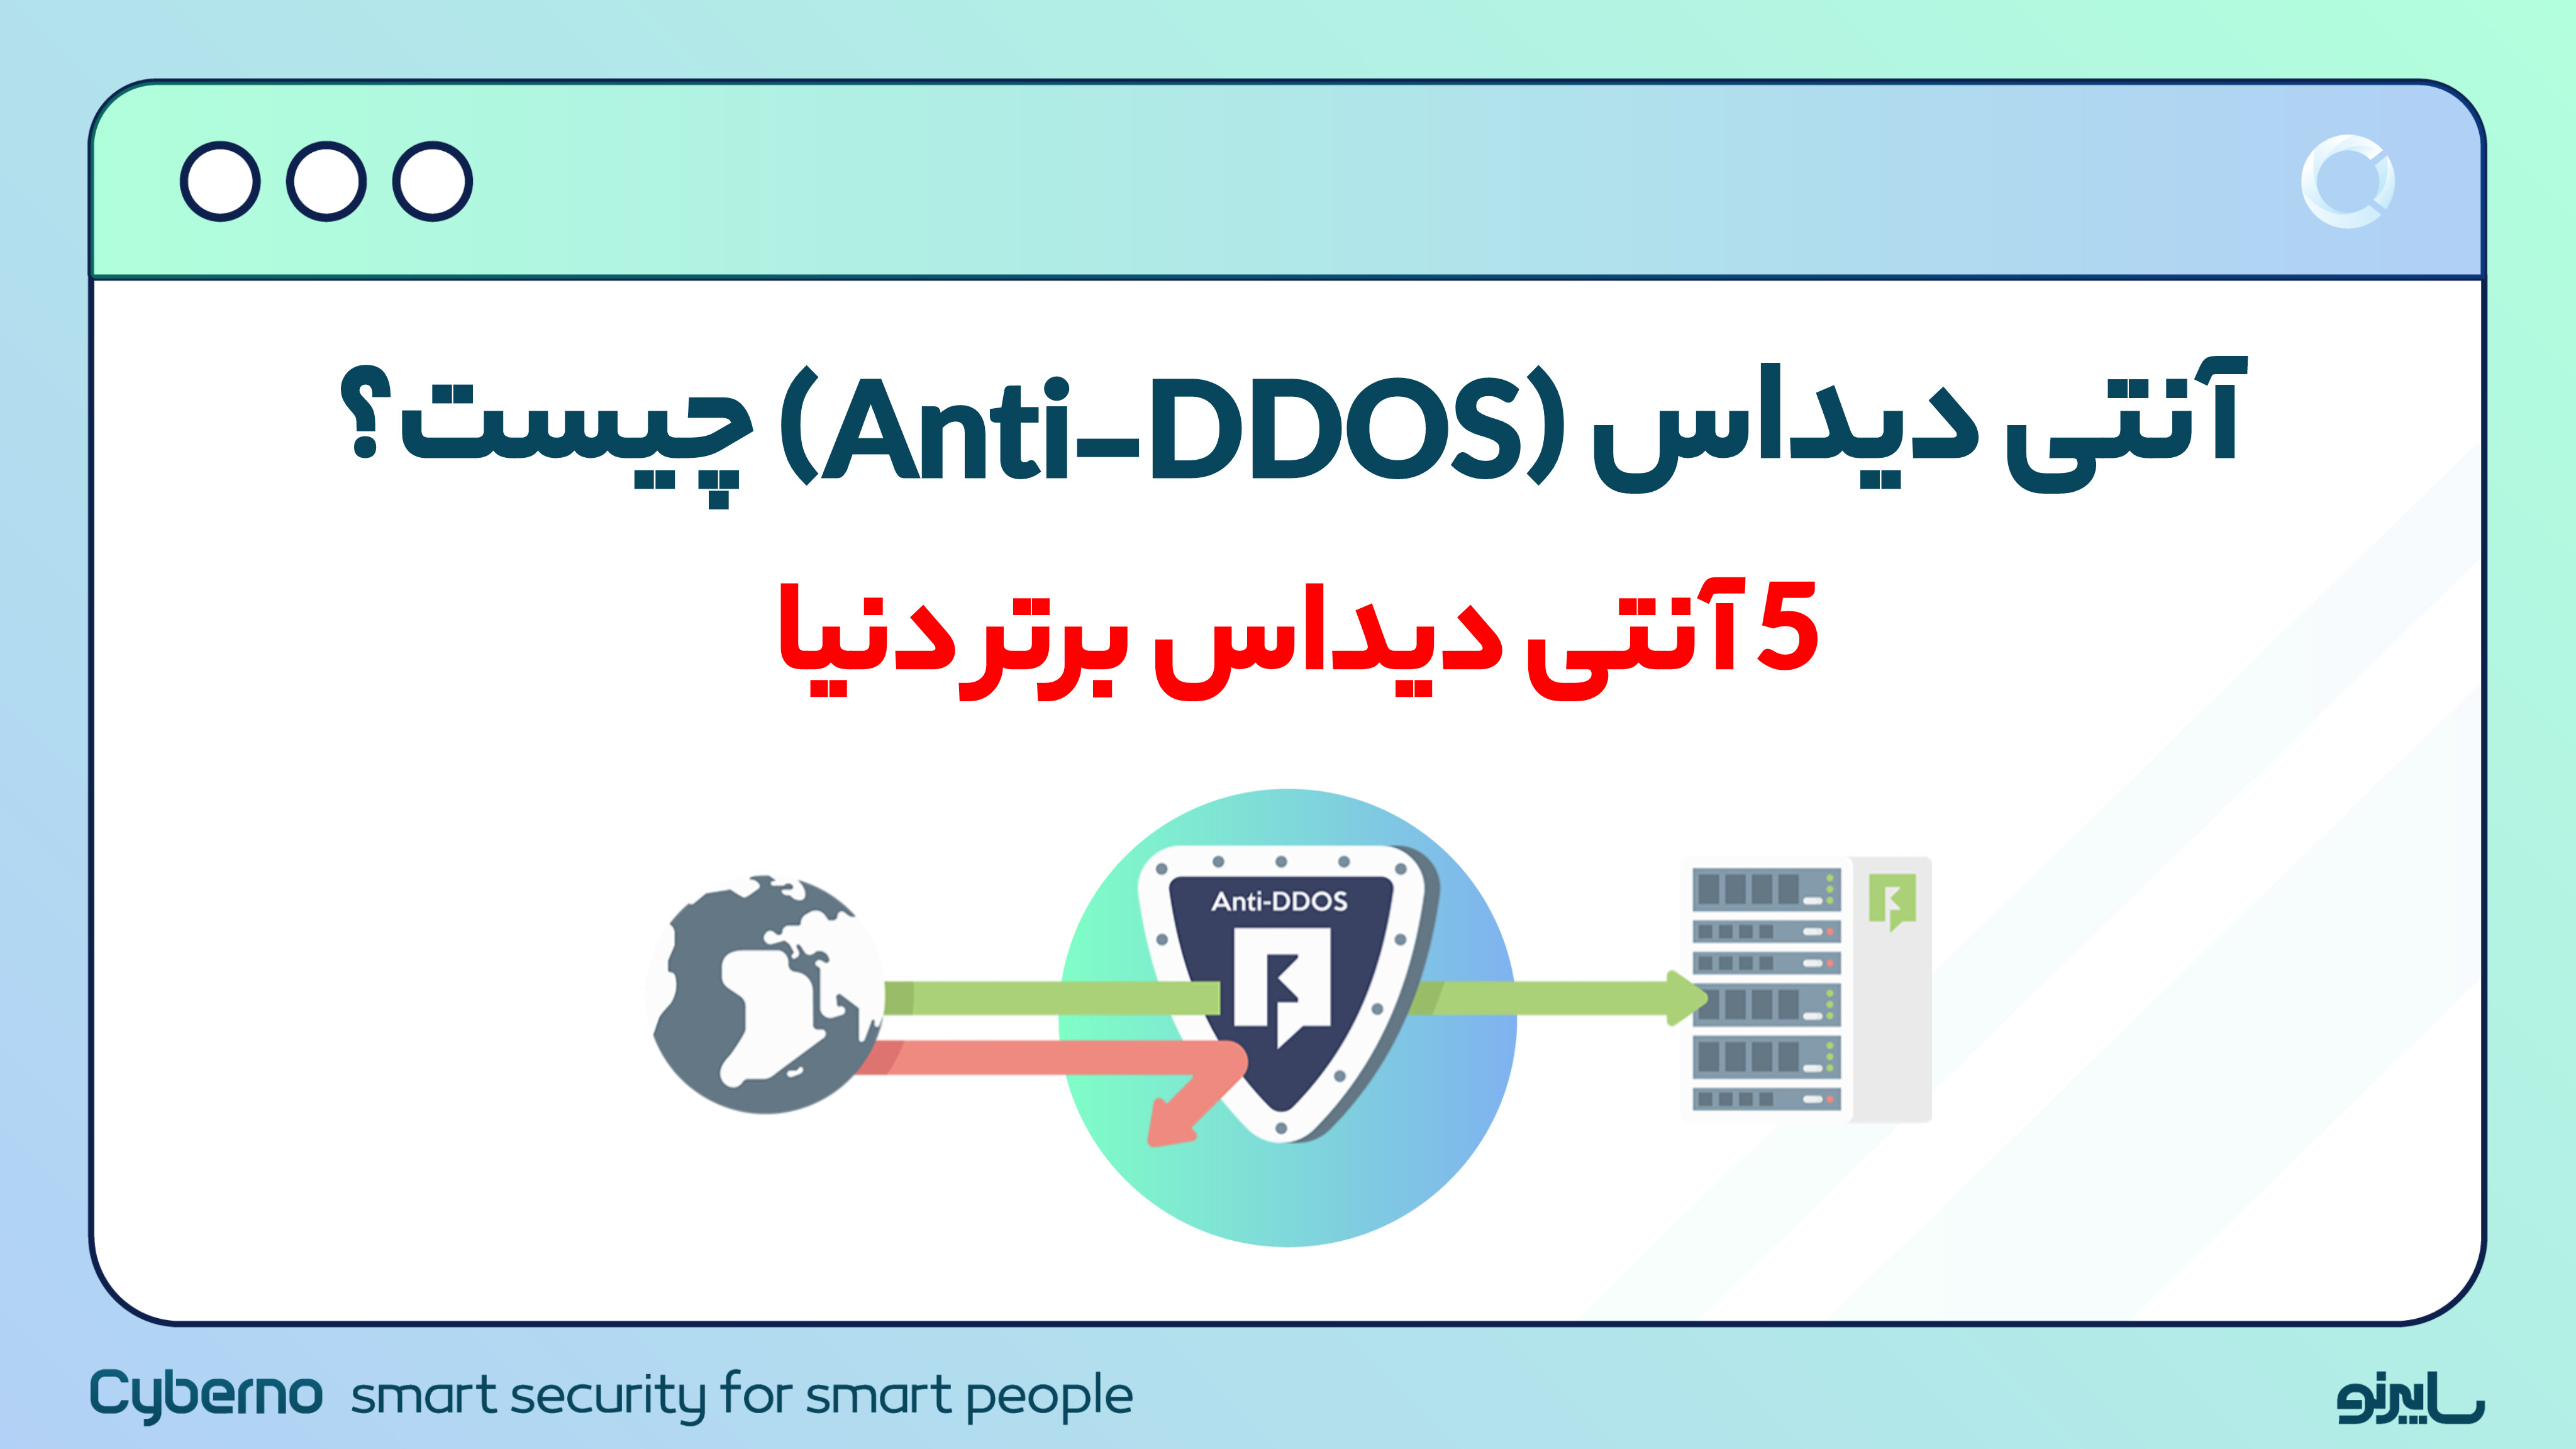 آنتی دیداس (Anti-DDoS) چیست؟ ۵ آنتی دیداس برتر دنیا